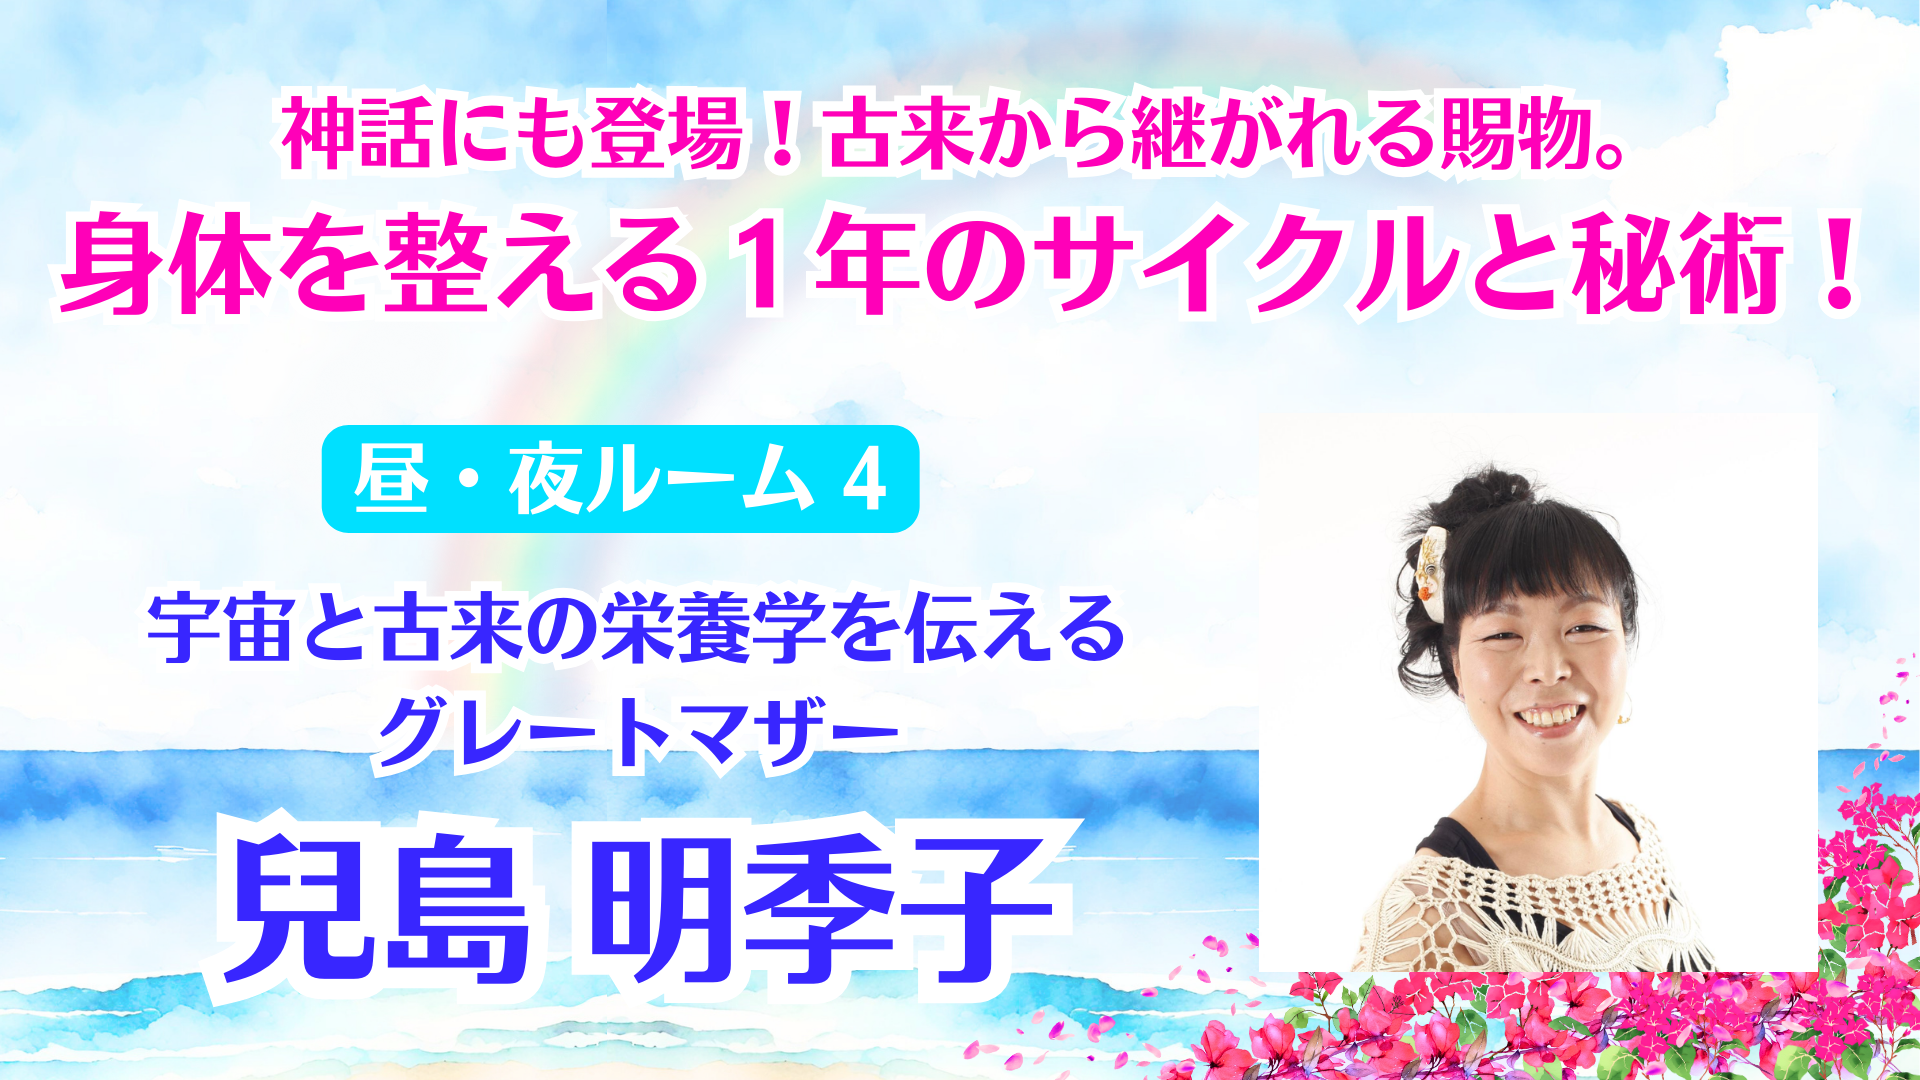 社会貢献士・学校支援士の活動報告第30回目　　　　　　　　　　兒島明季子さんは、 「咲くフェス」に7月19日、出演されます。